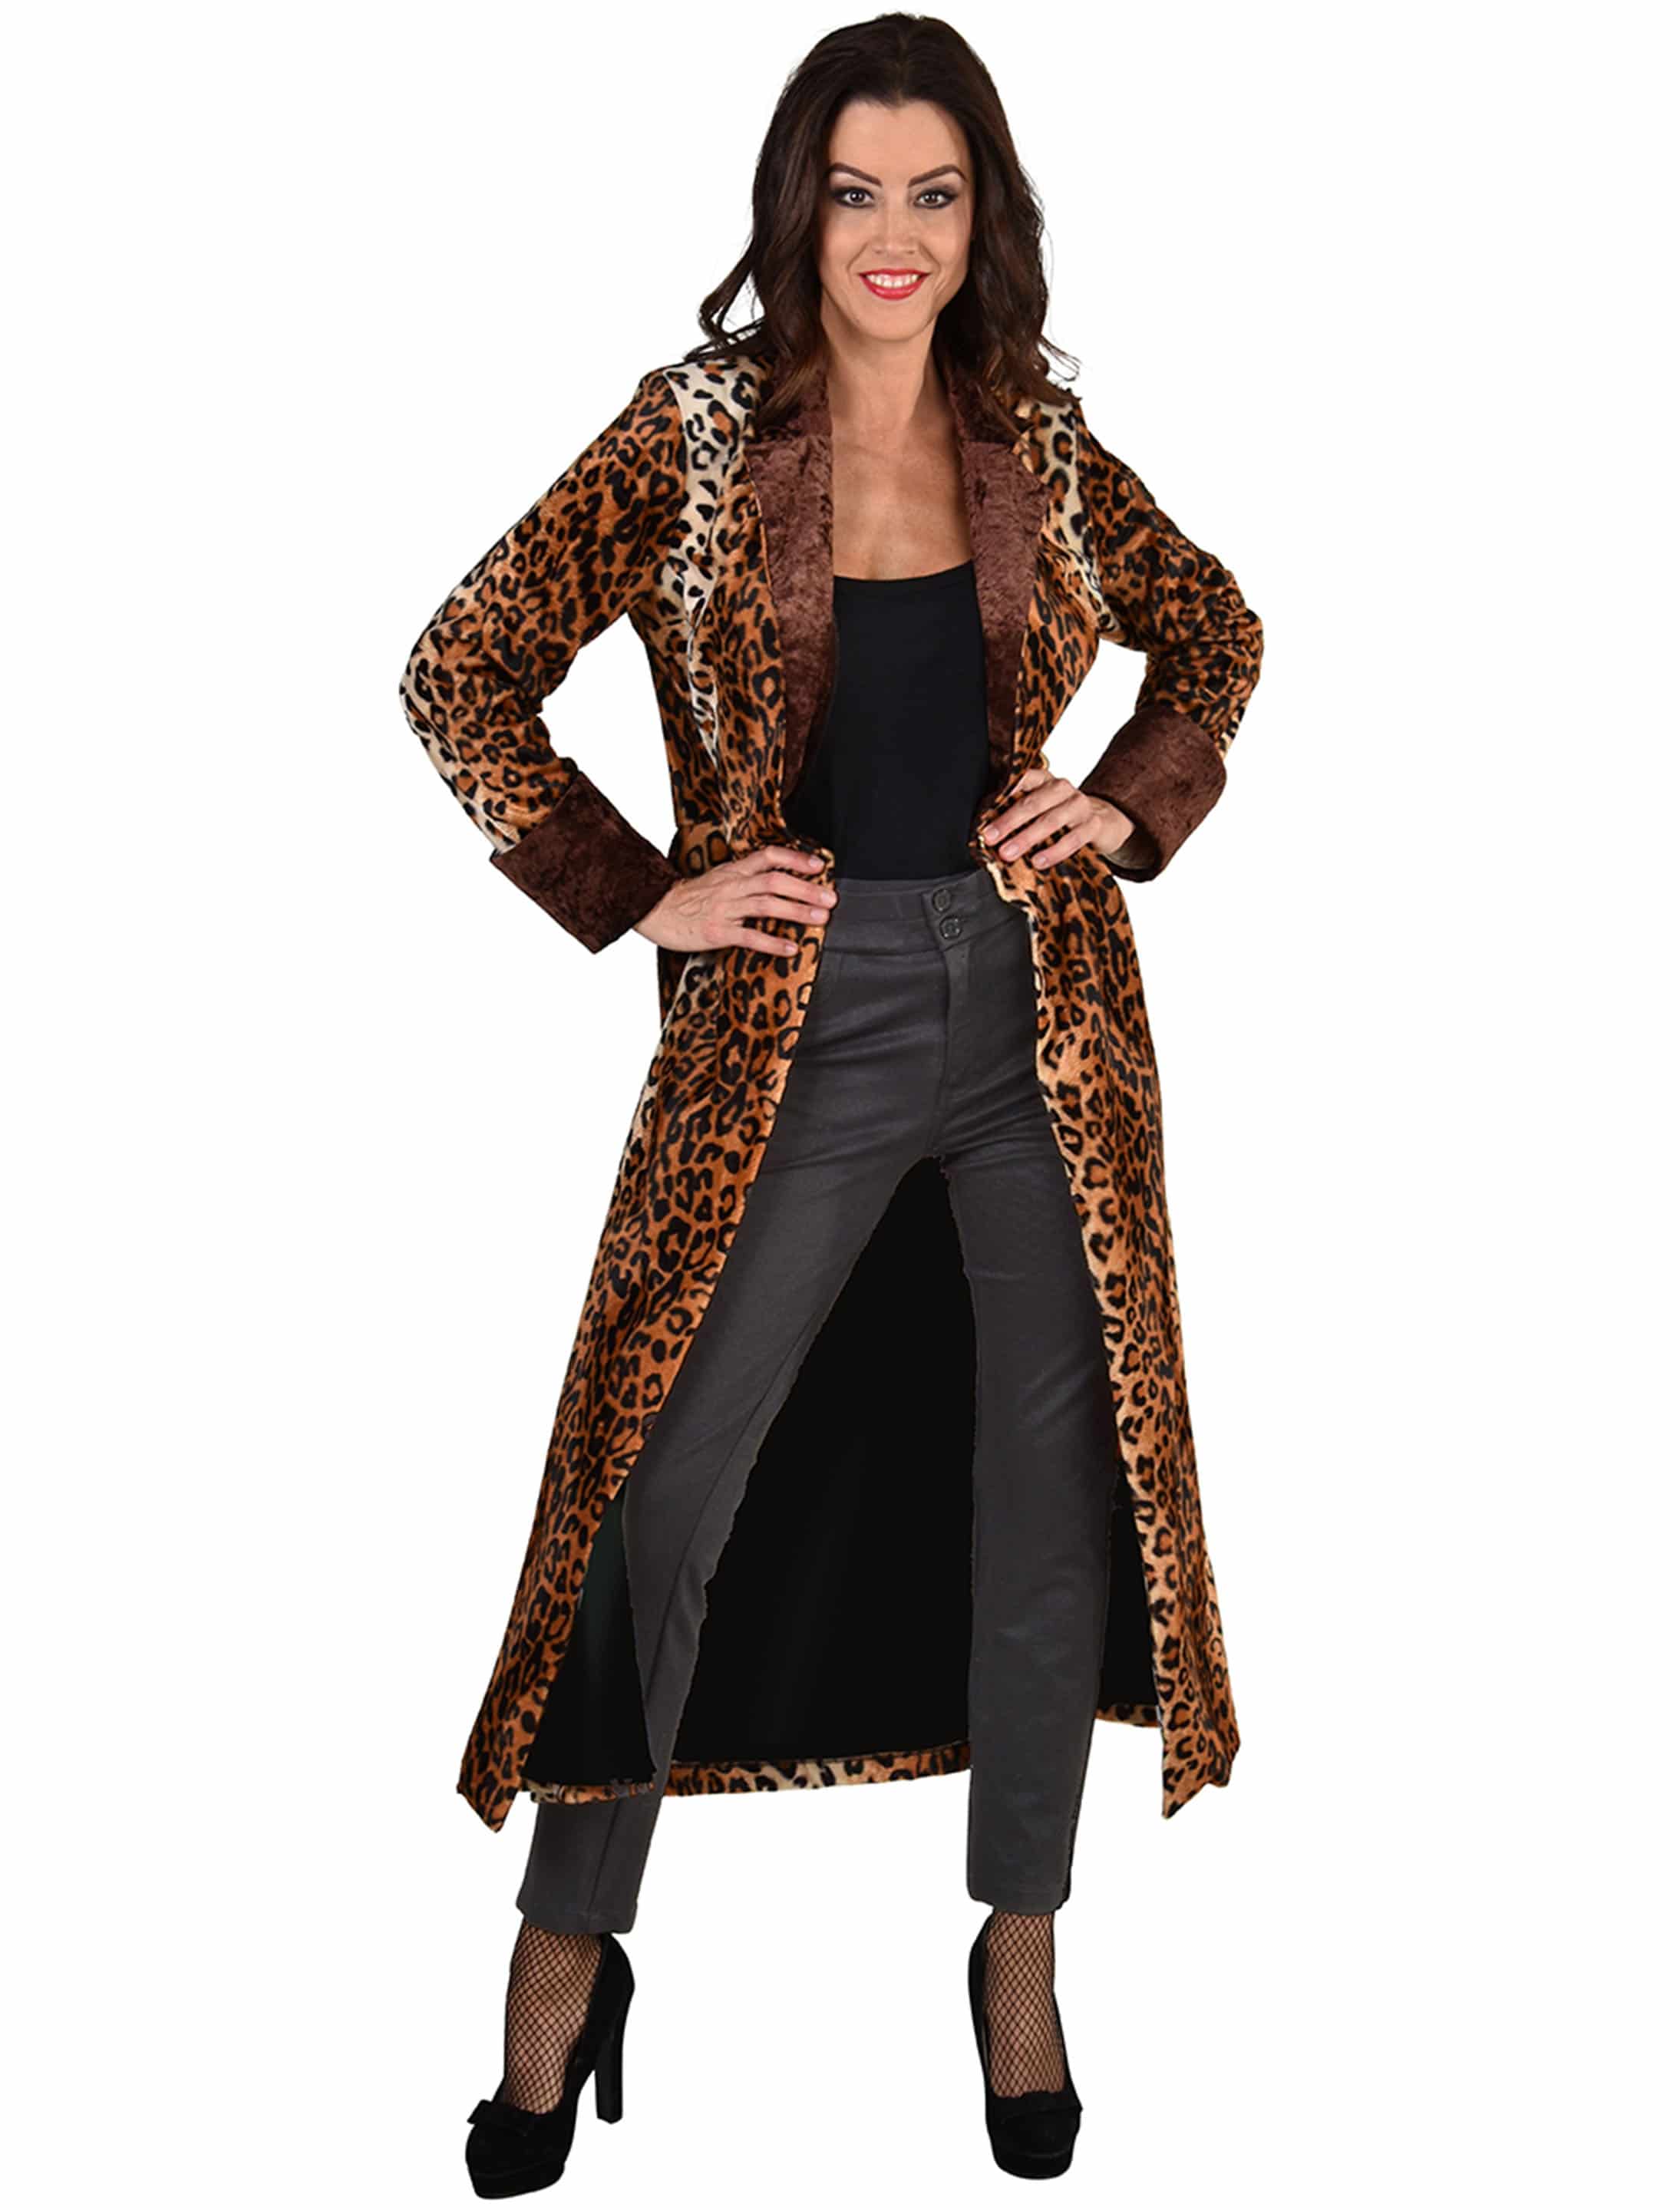 Mantel Leopard Damen schwarz/braun | L/XL m224816-041-014 | L/XL schwarz/braun 